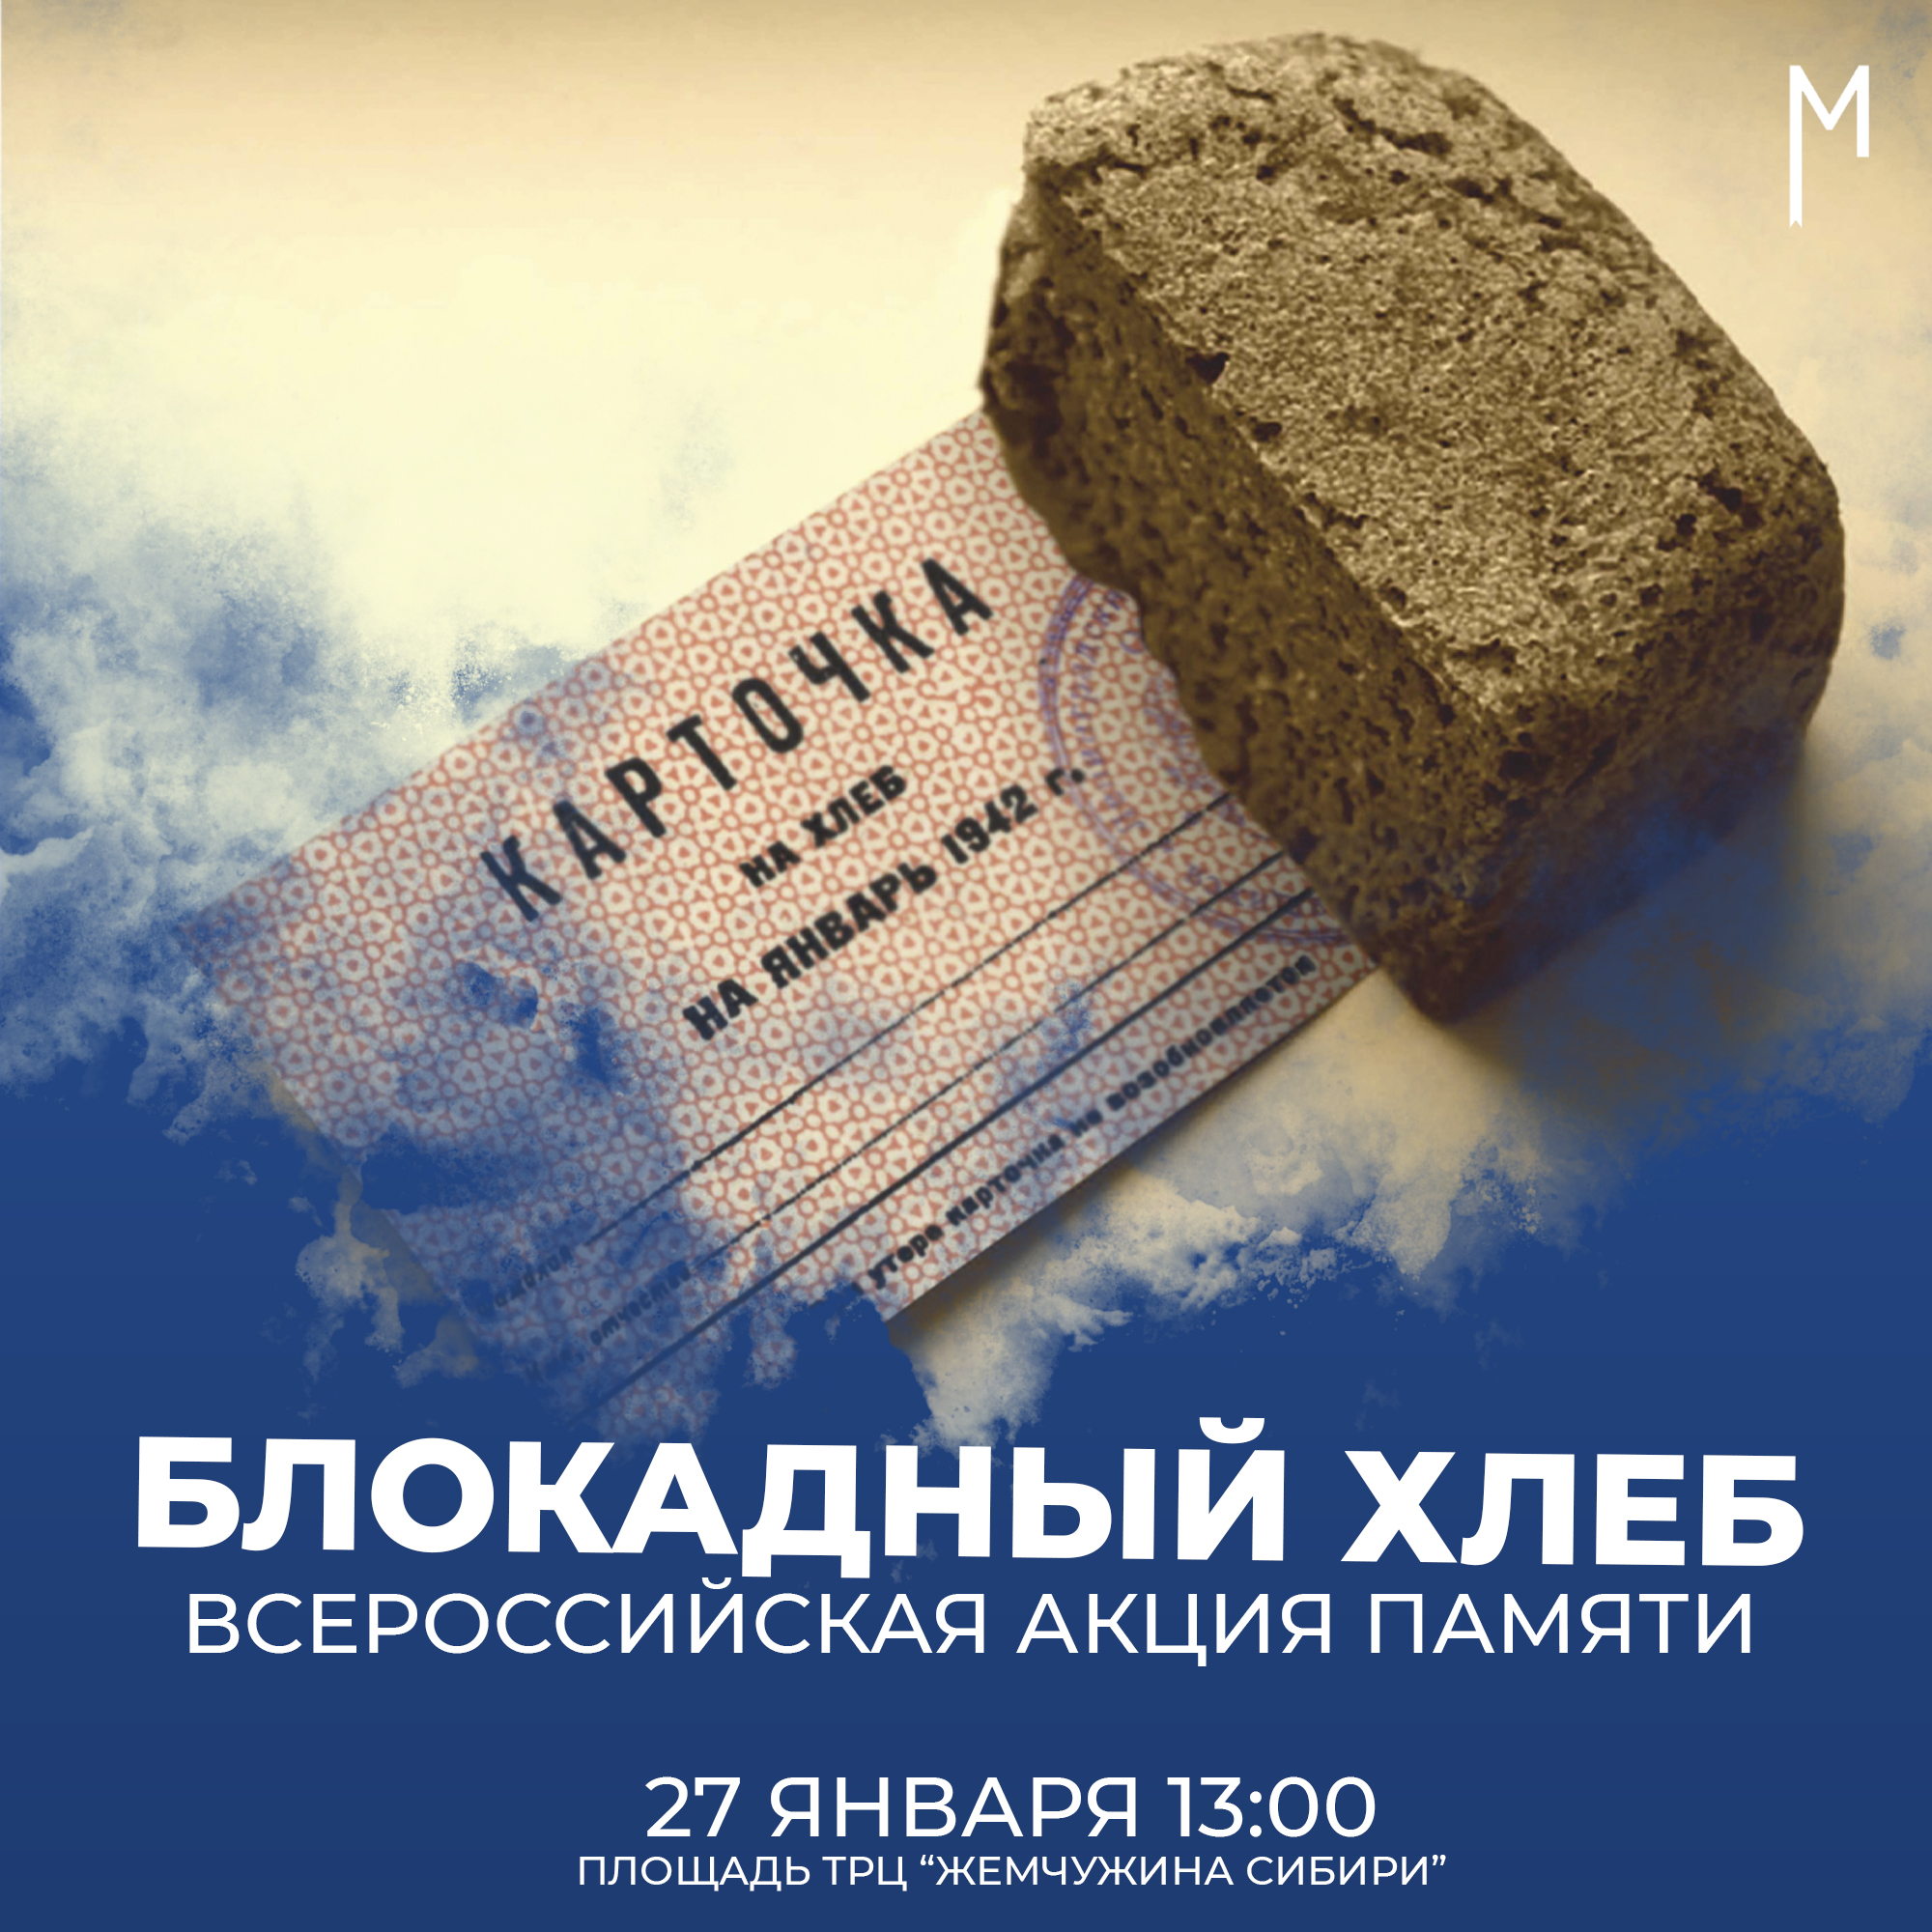 С 18 по 27 января во всех регионах нашей страны проходит Всероссийская акция памяти «Блокадный хлеб»